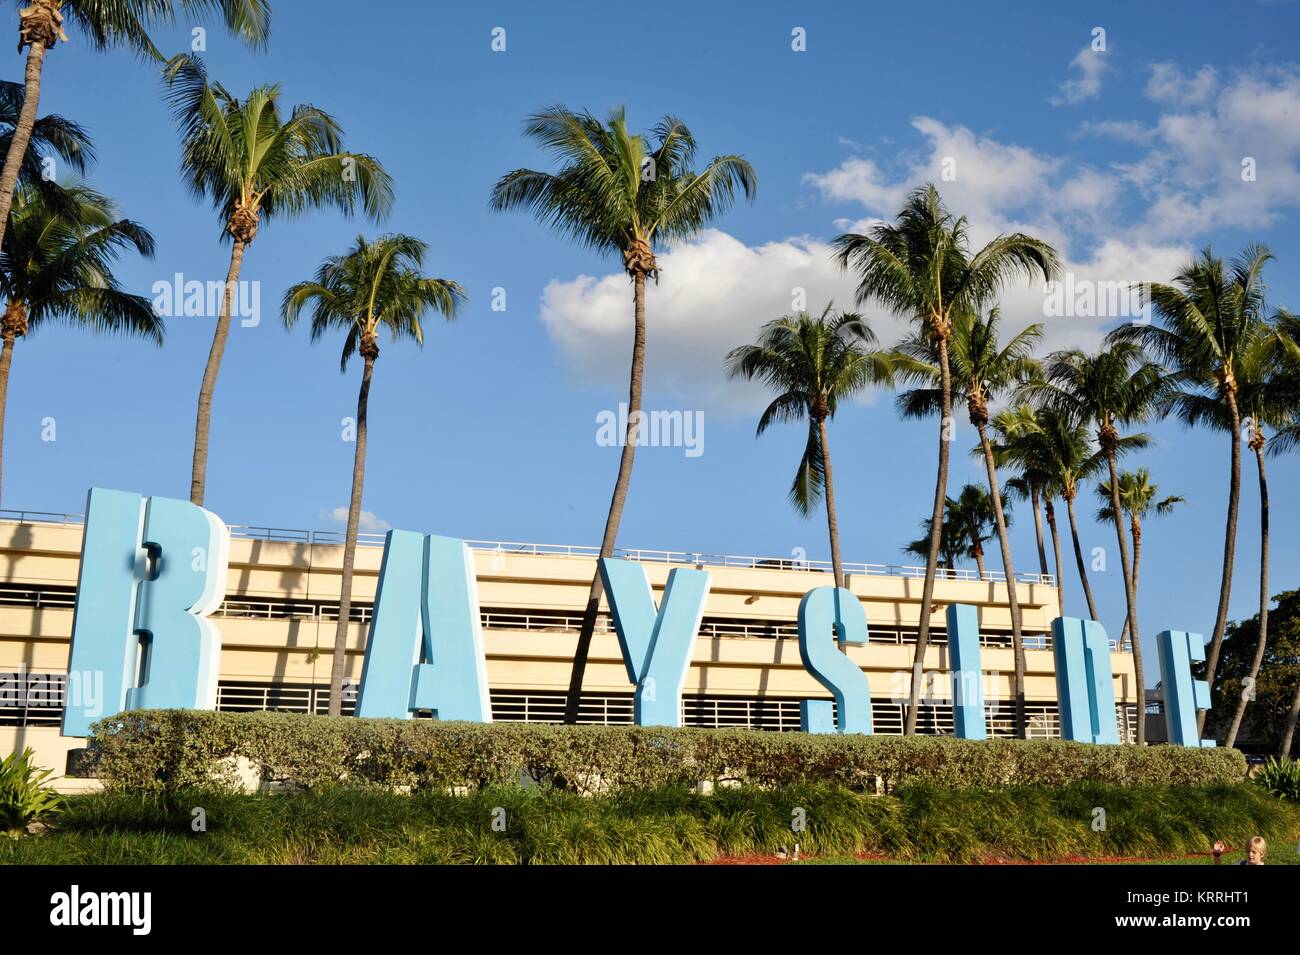 Bayside segno con alberi di palma tropicali, cielo blu e di edifici urbani, al di fuori di Bayside Marketplace a Miami, Florida, Stati Uniti d'America. Foto Stock